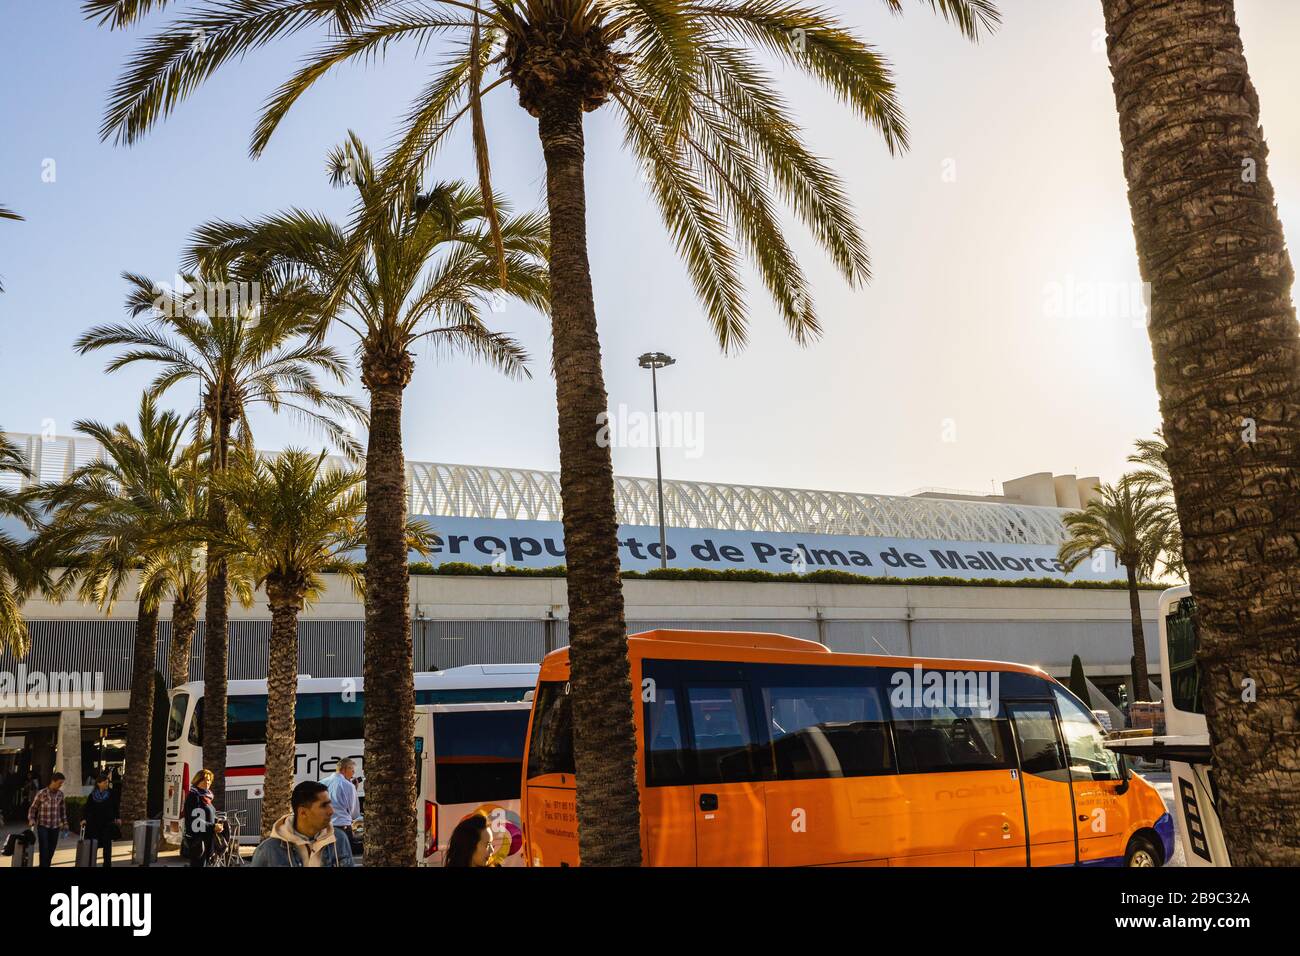 Palma di Mallorca, Espagne - 02/28/2020: Entrée de l'aéroport Palma di Mallorca avec palmiers, le jour ensoleillé Banque D'Images